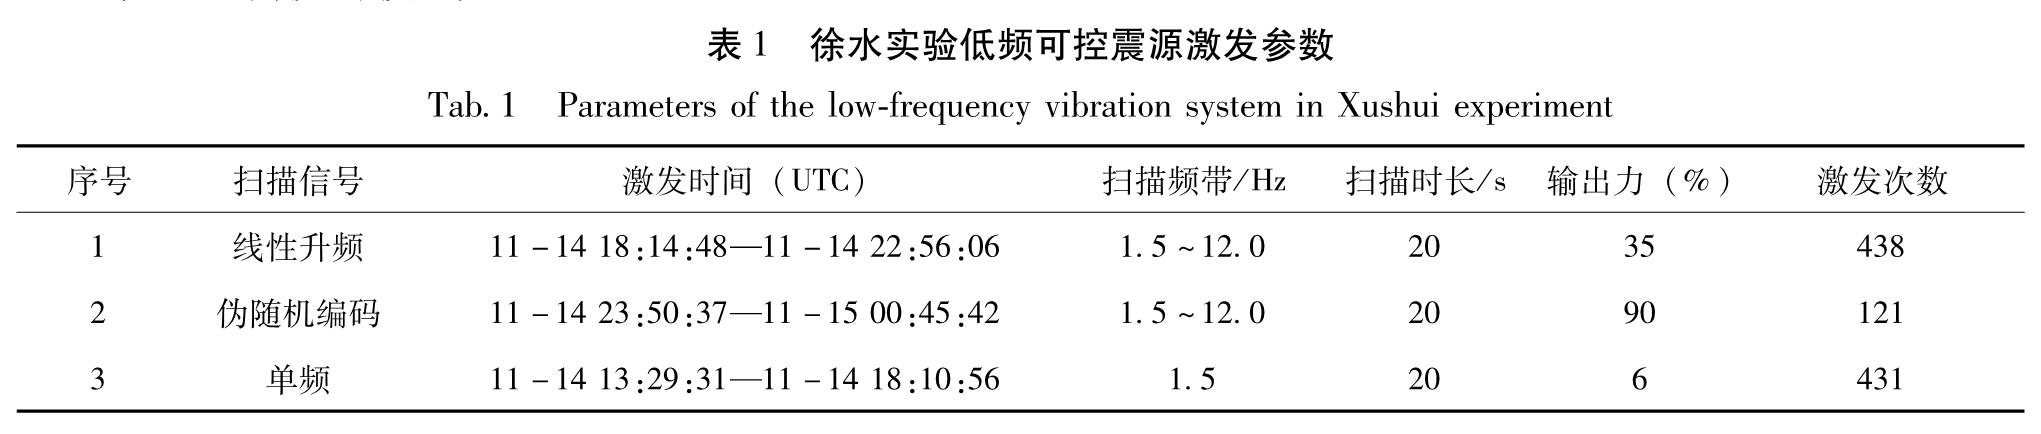 表1 徐水实验低频可控震源激发参数<br/>Tab.1 Parameters of the low-frequency vibration system in Xushui experiment